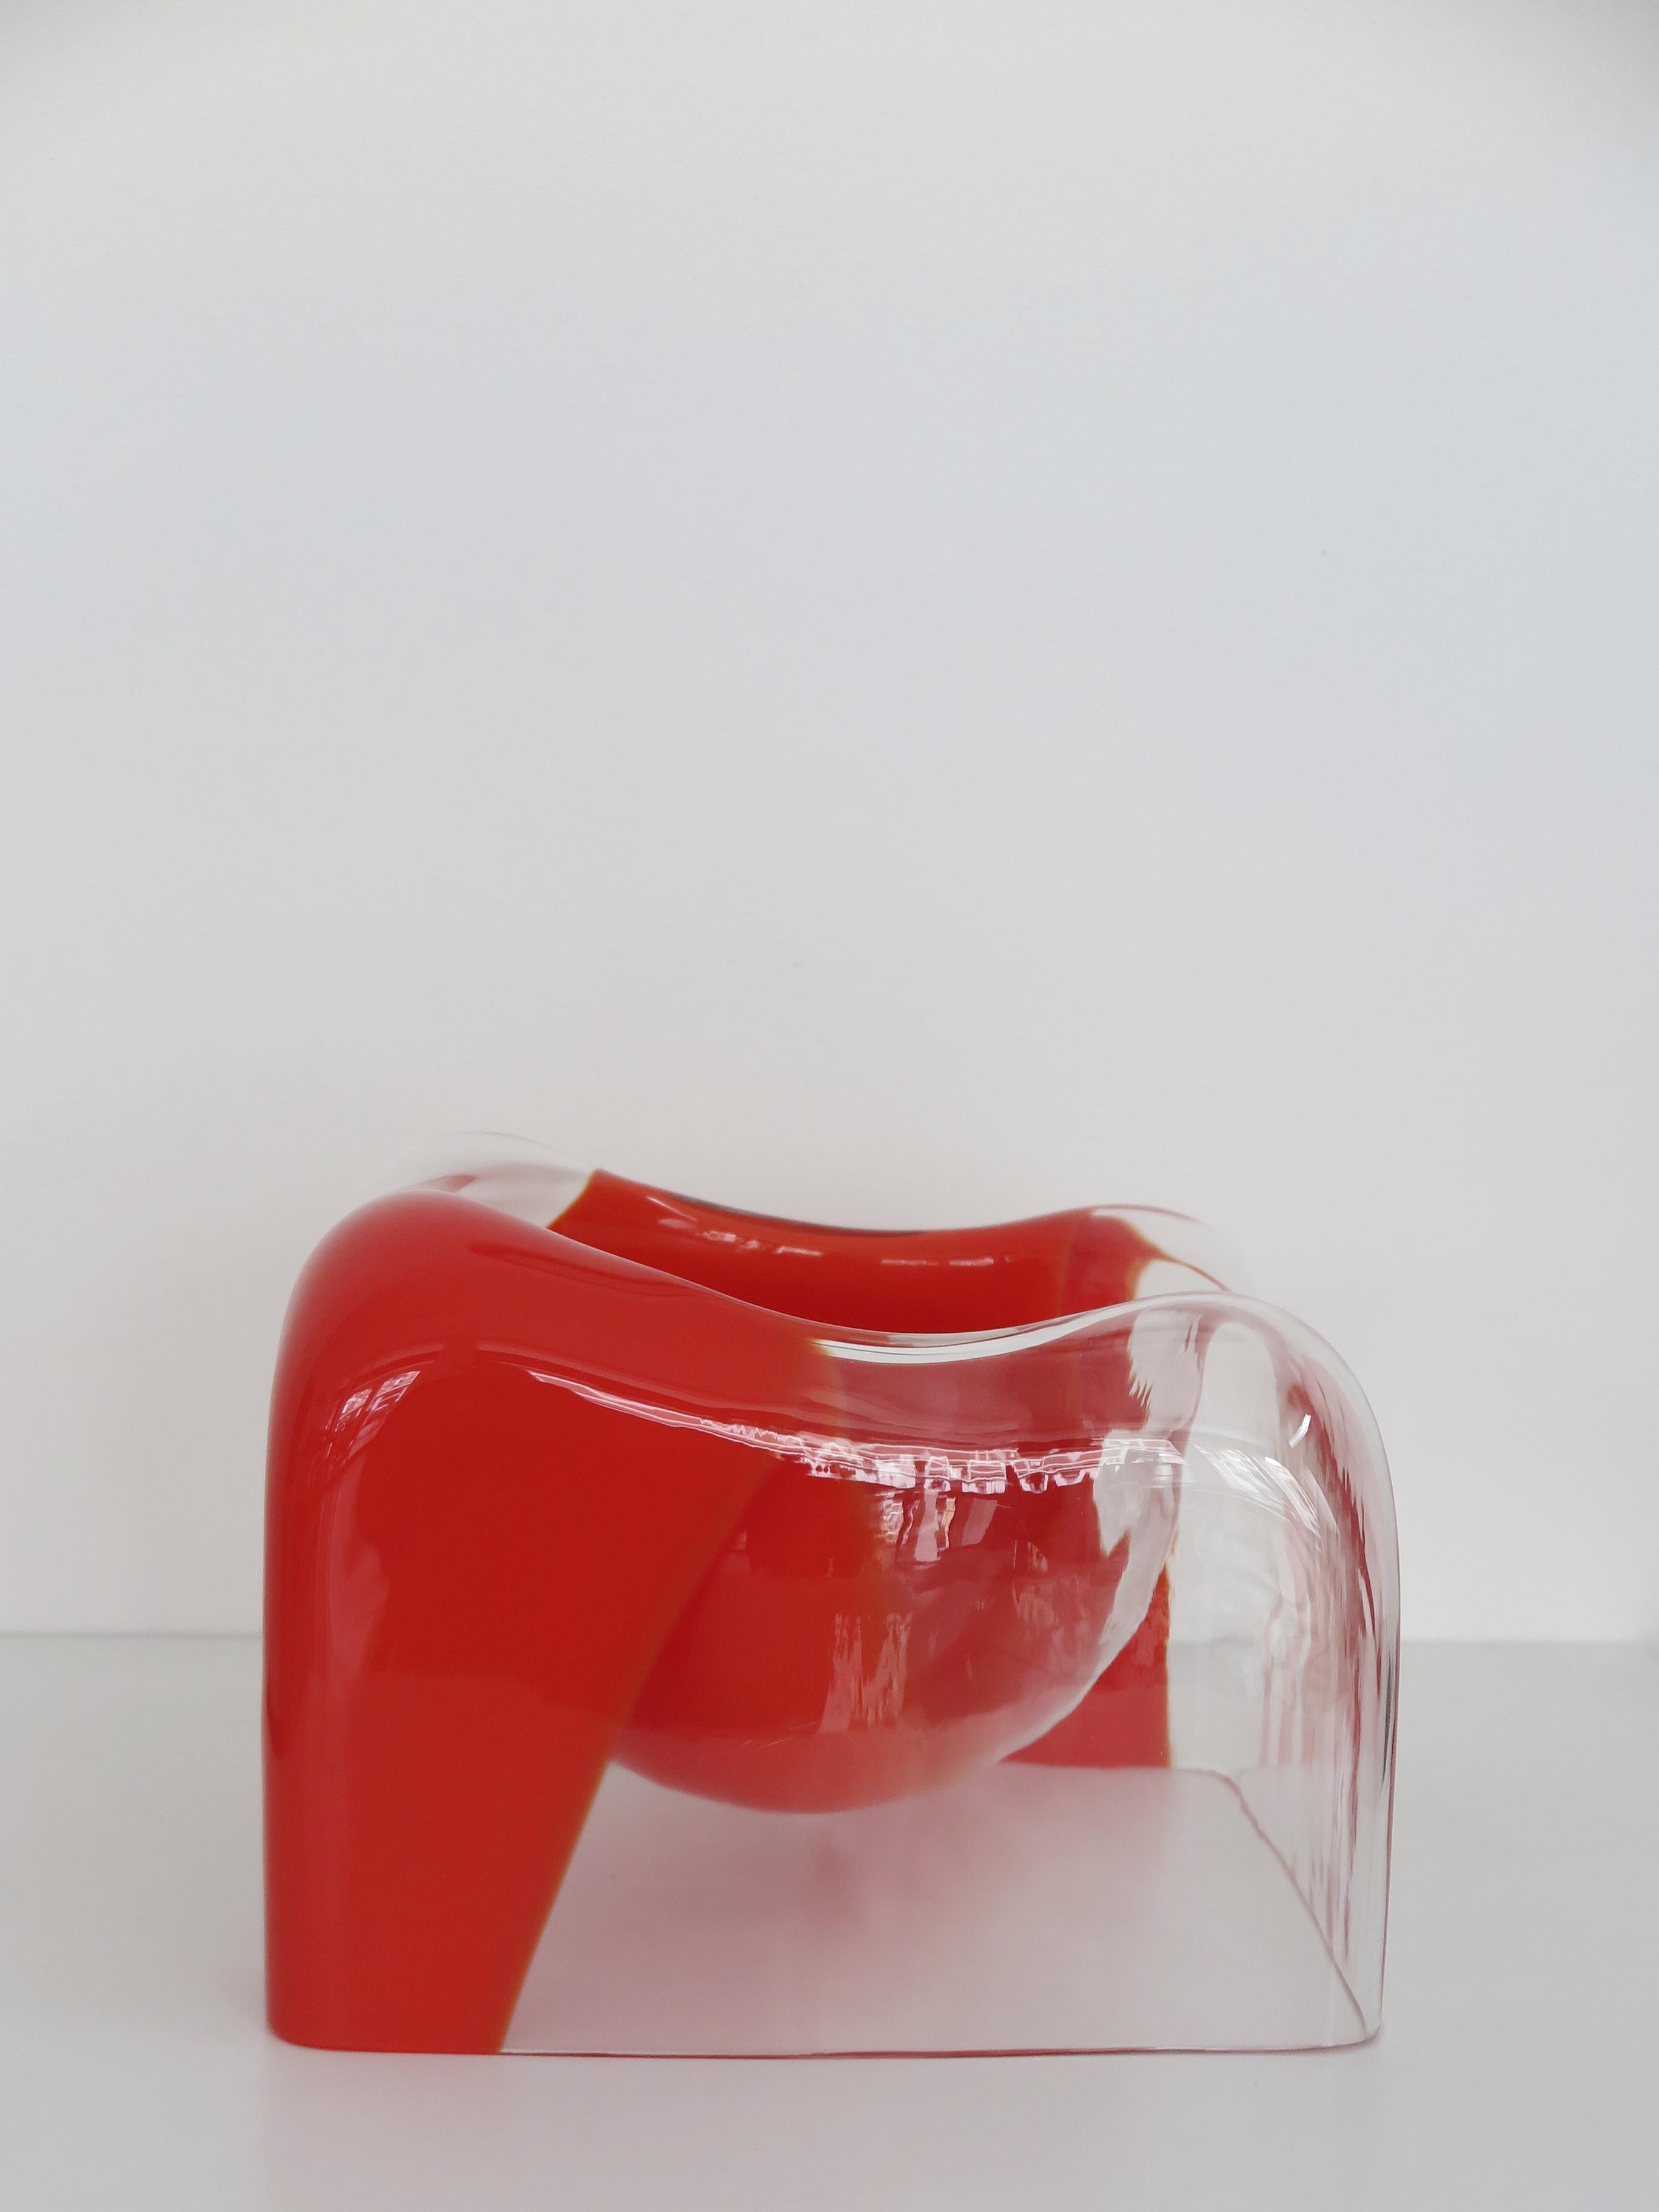 Carlo Nason Italian Sculpture Vase Murano Glass for Mazzega 1970s For Sale 1